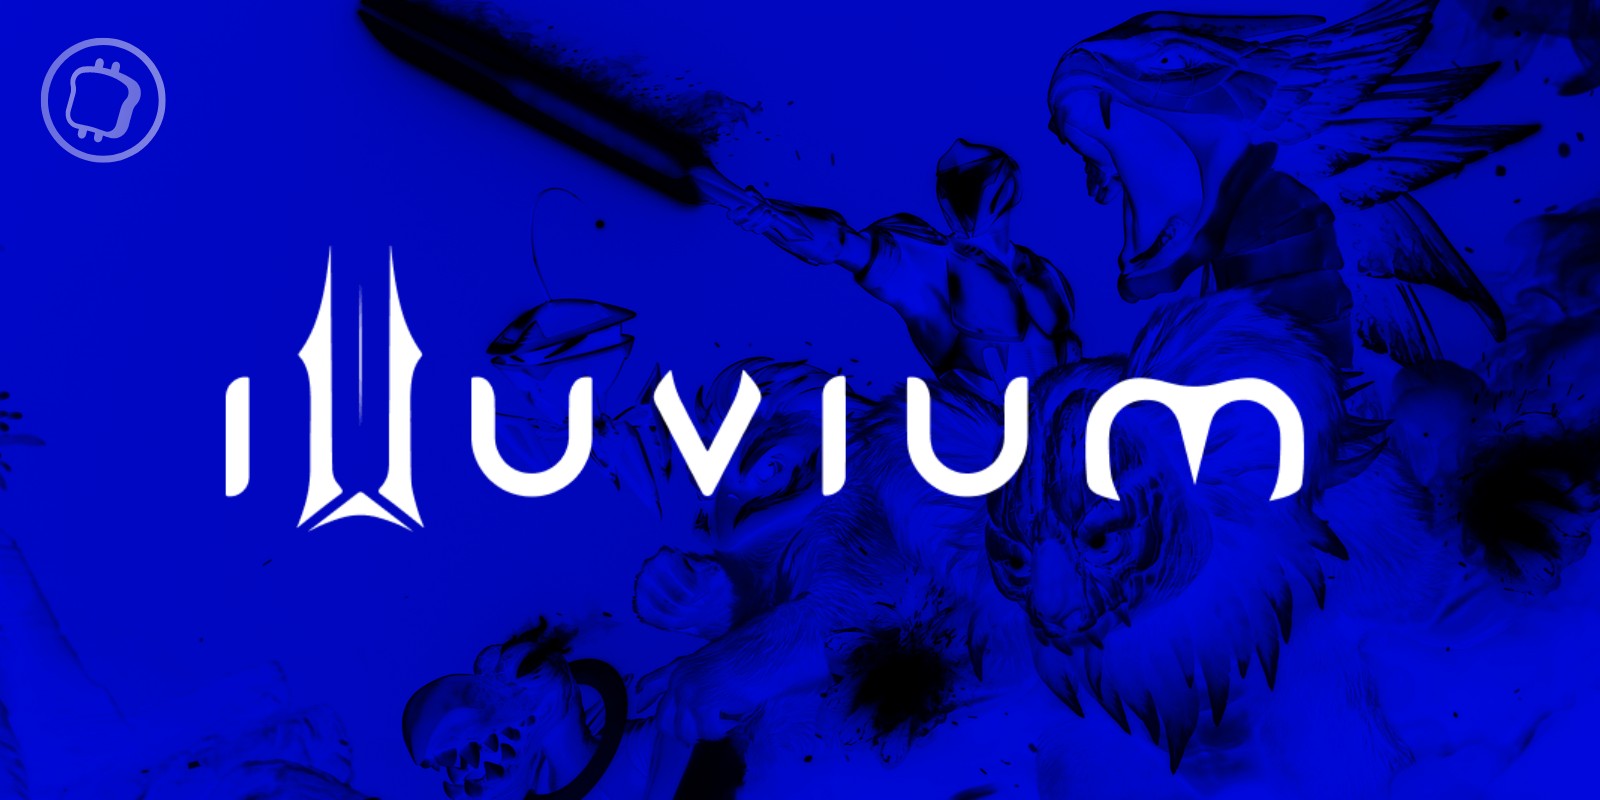 Le jeu Web3 Illuvium est maintenant disponible - Comment y jouer ?